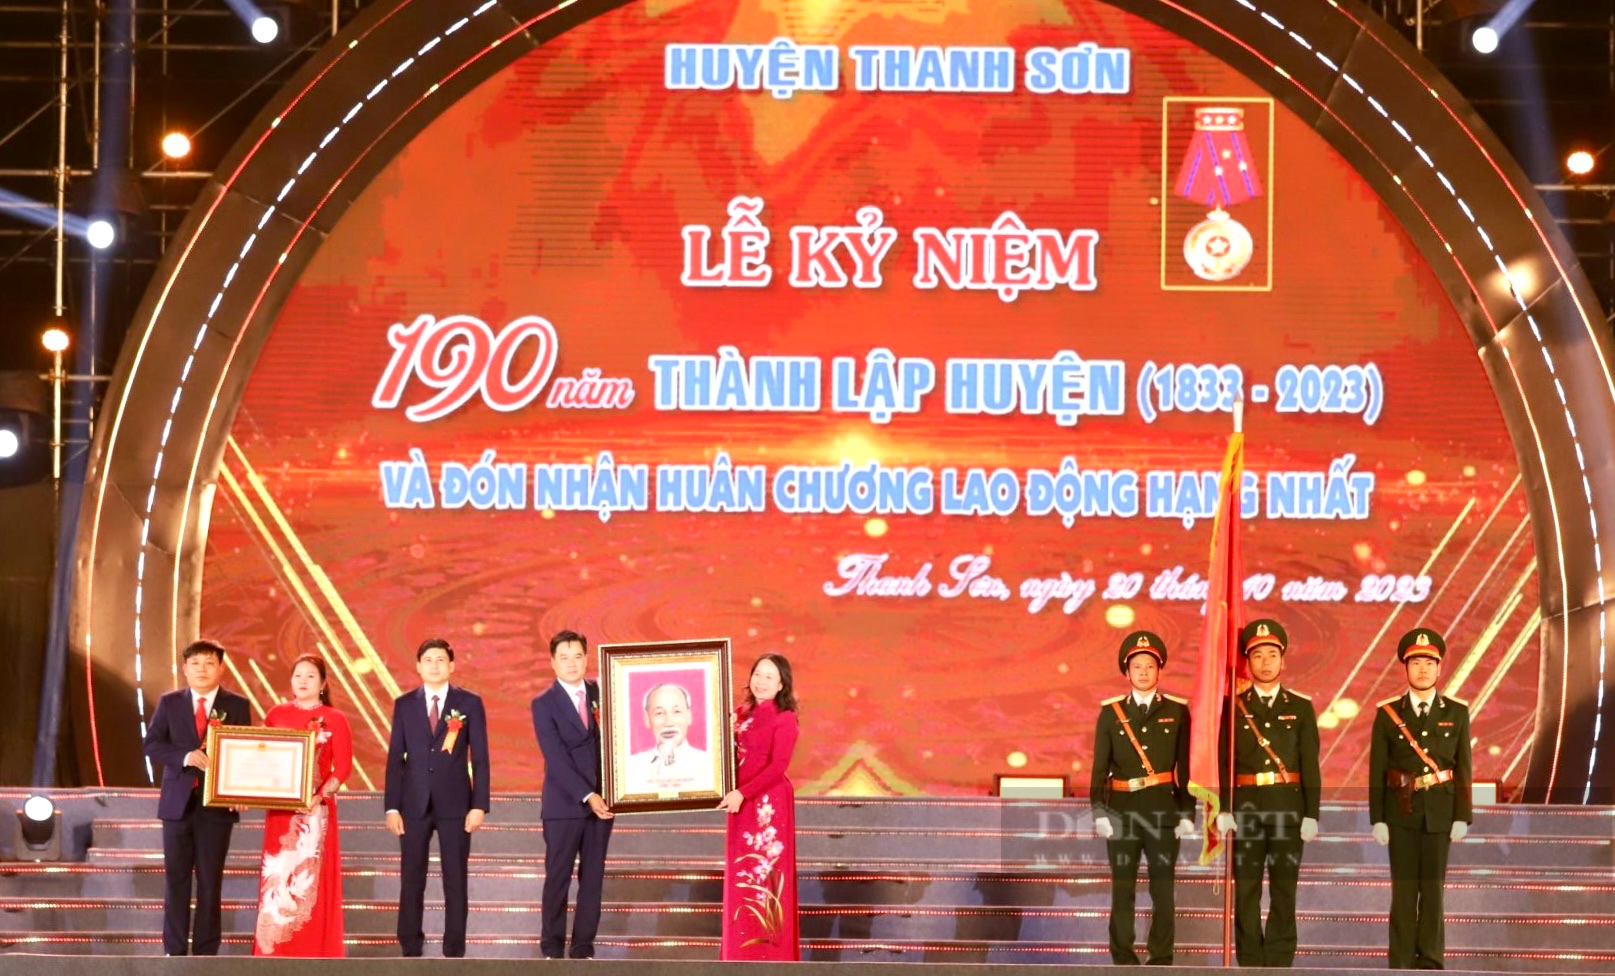 Phó Chủ tịch nước Võ Thị Ánh Xuân dự kỷ niệm 190 năm thành lập huyện Thanh Sơn (Phú Thọ) - Ảnh 1.